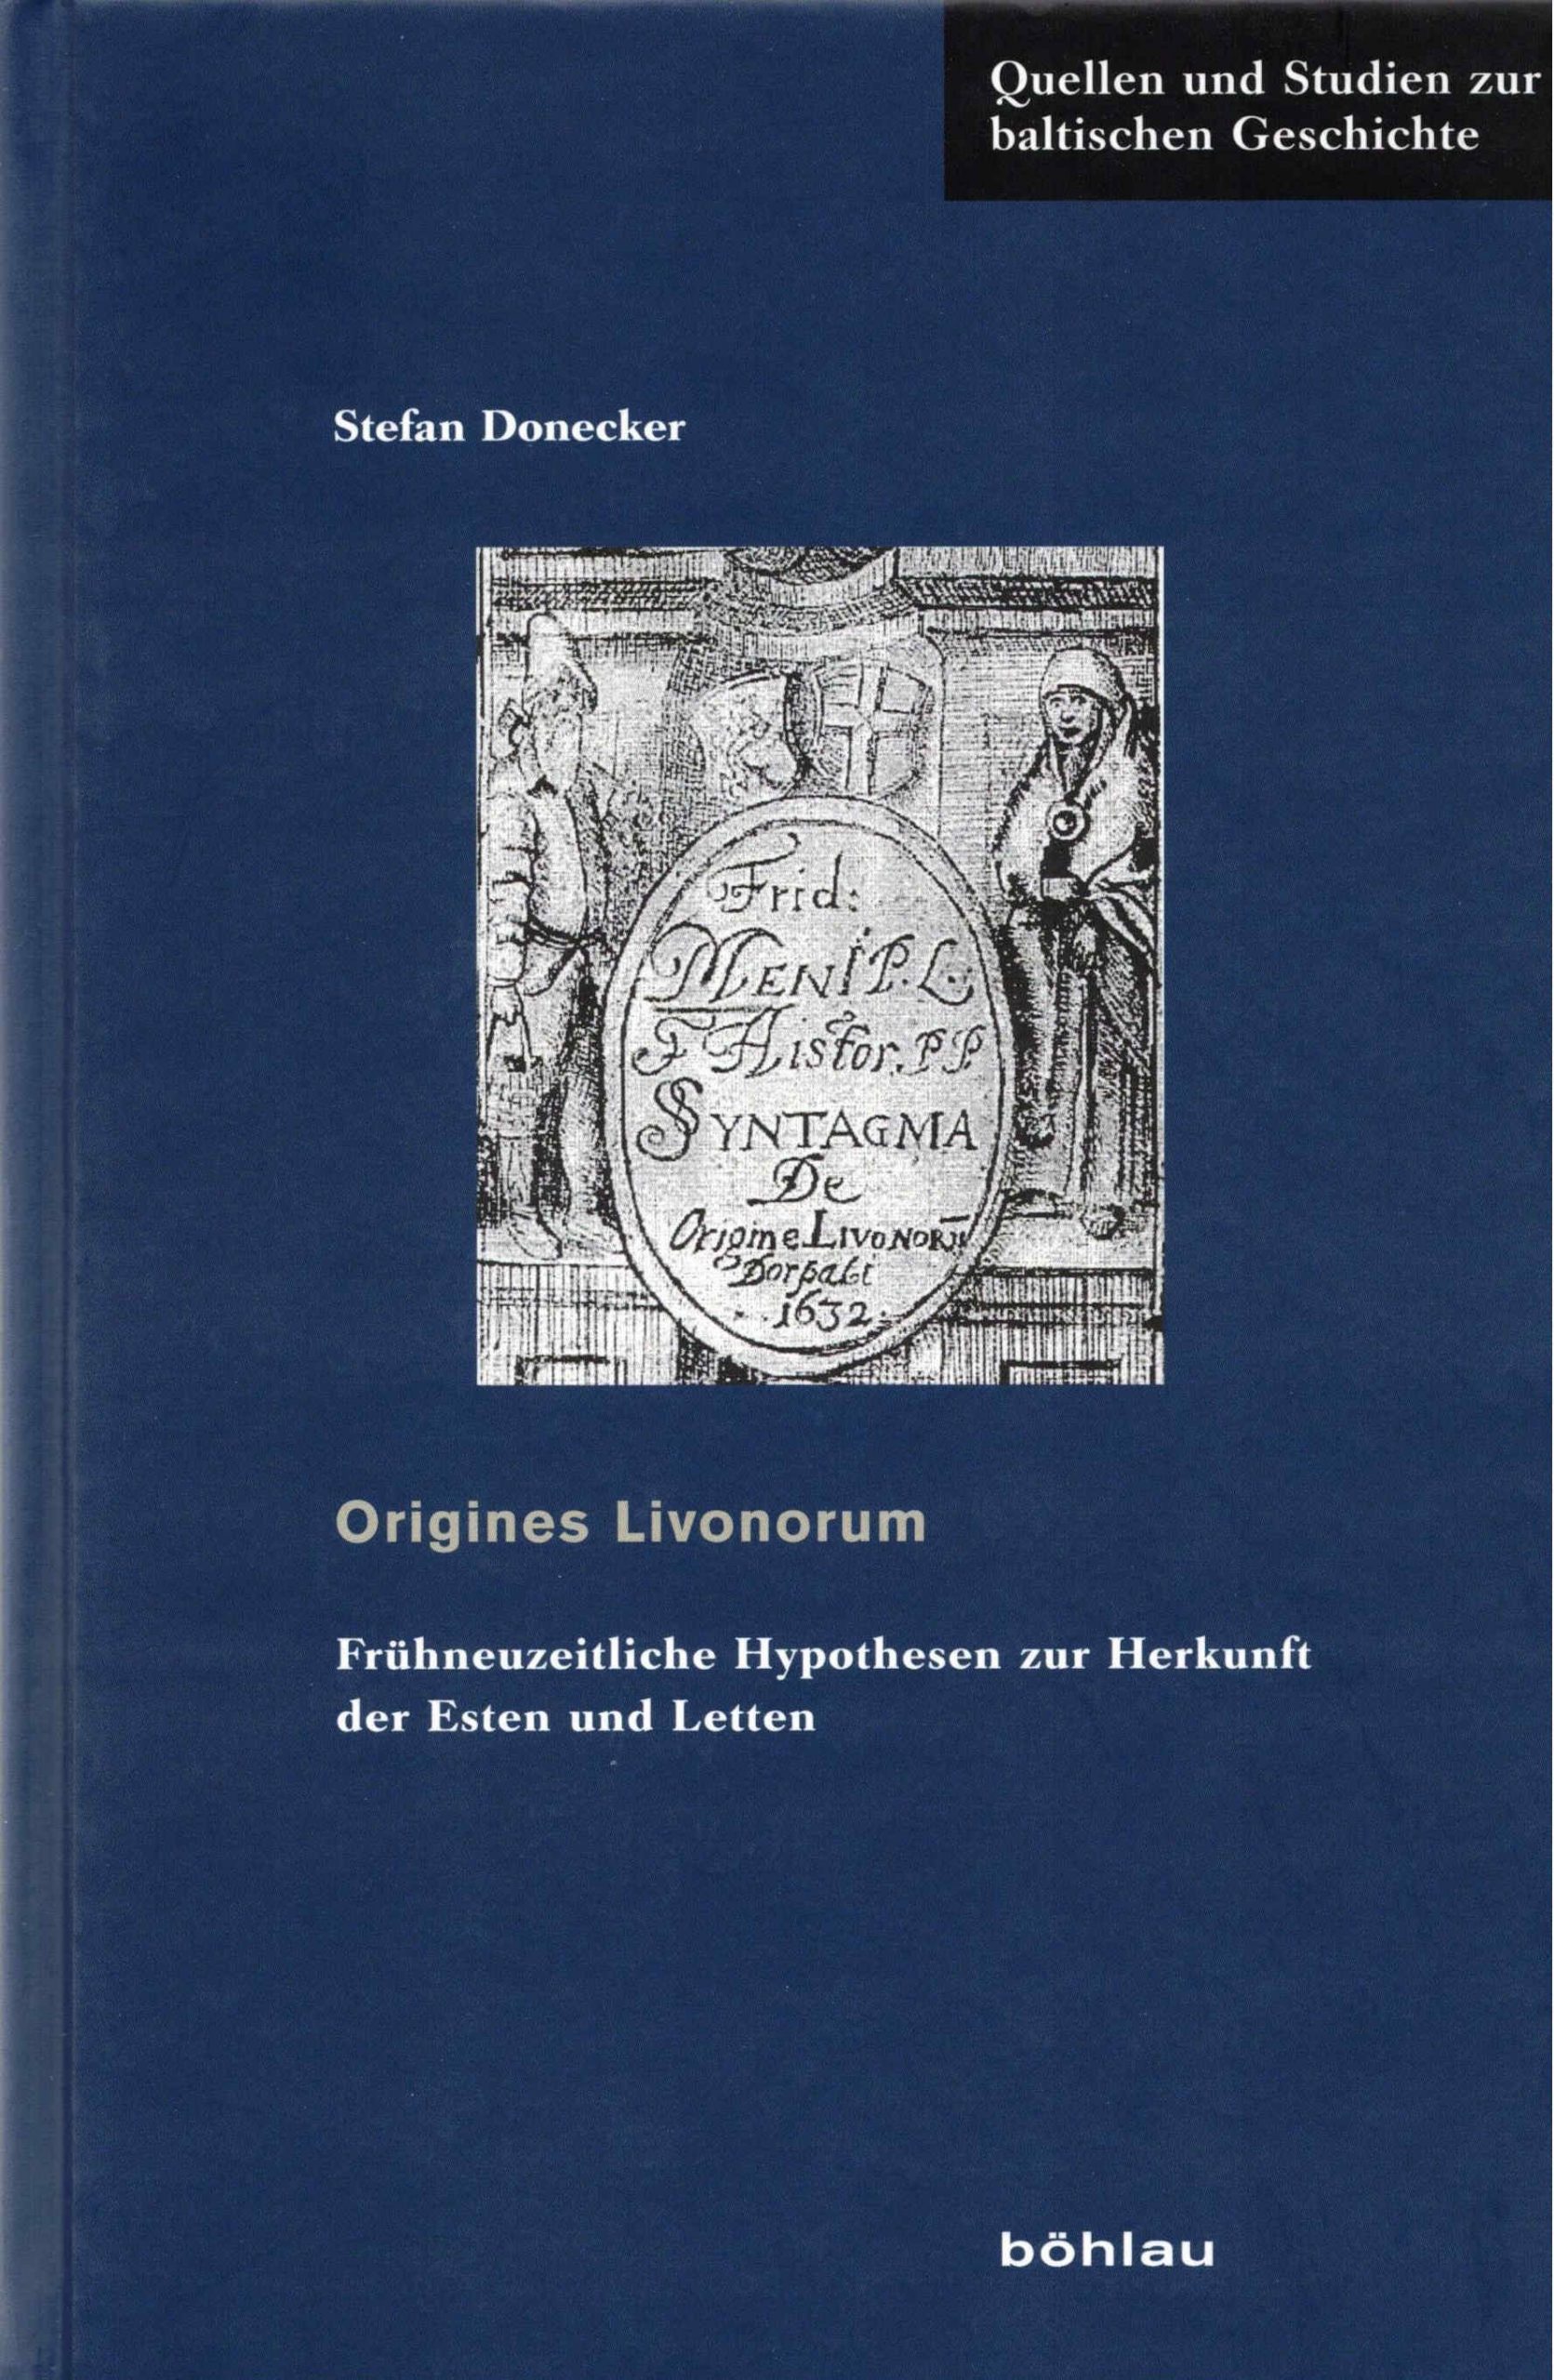 Band 25: Origines Livonorum. Frühneuzeitliche Hypothesen zur Herkunft der Esten und Letten